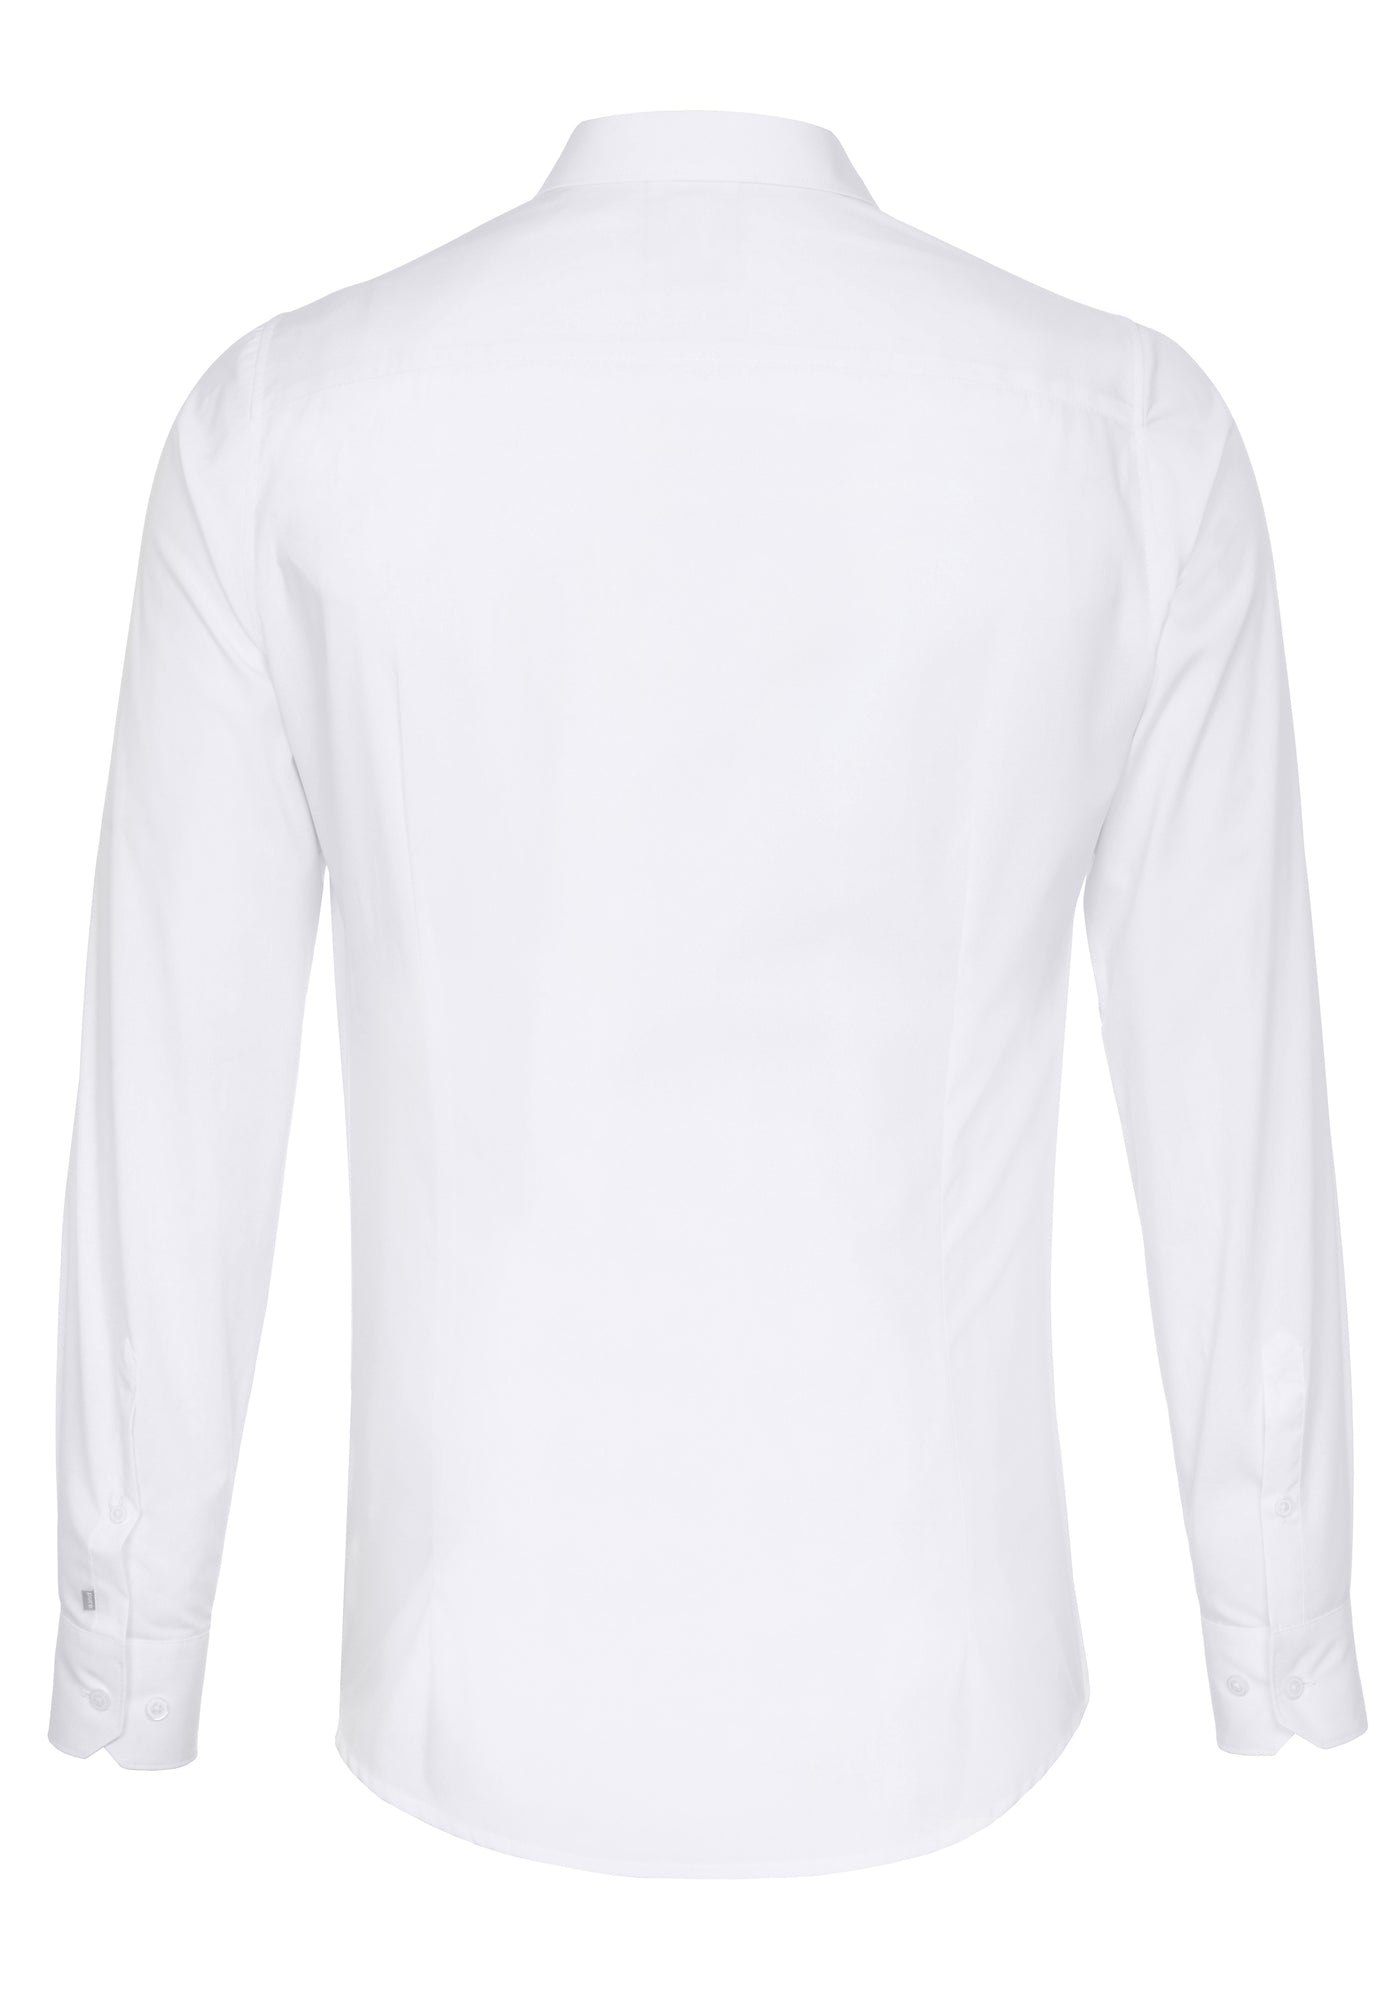 3384-800 - City Hemd Silver extra lang - weiß - pureshirt